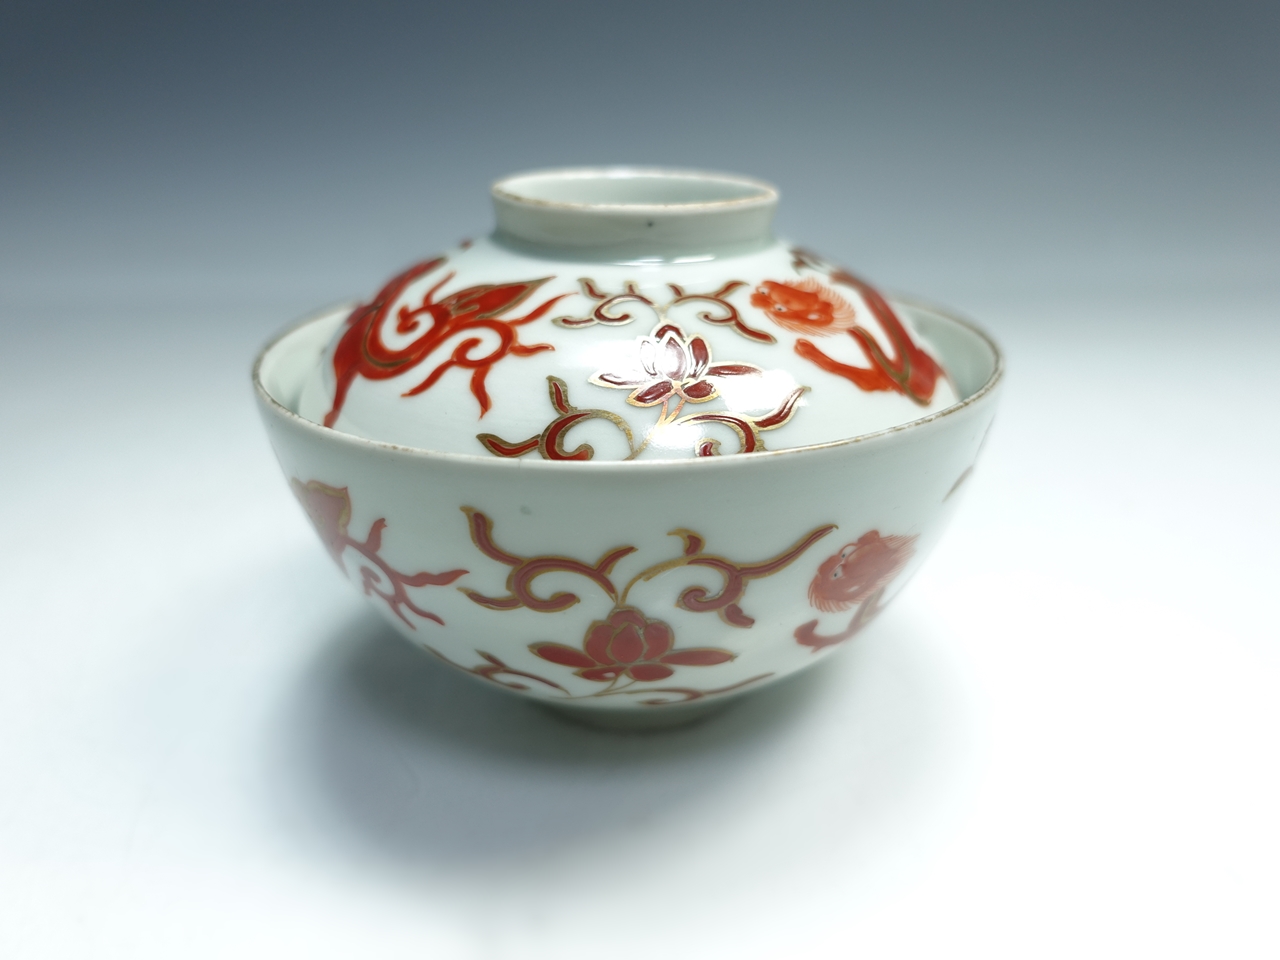 【中国磁器】大明成化年製 赤繪茶碗を買取り致しました。 | 骨董品高価買取 ひるねこ堂 | 関西 尼崎での骨董品・美術品の高価買取はお任せください。